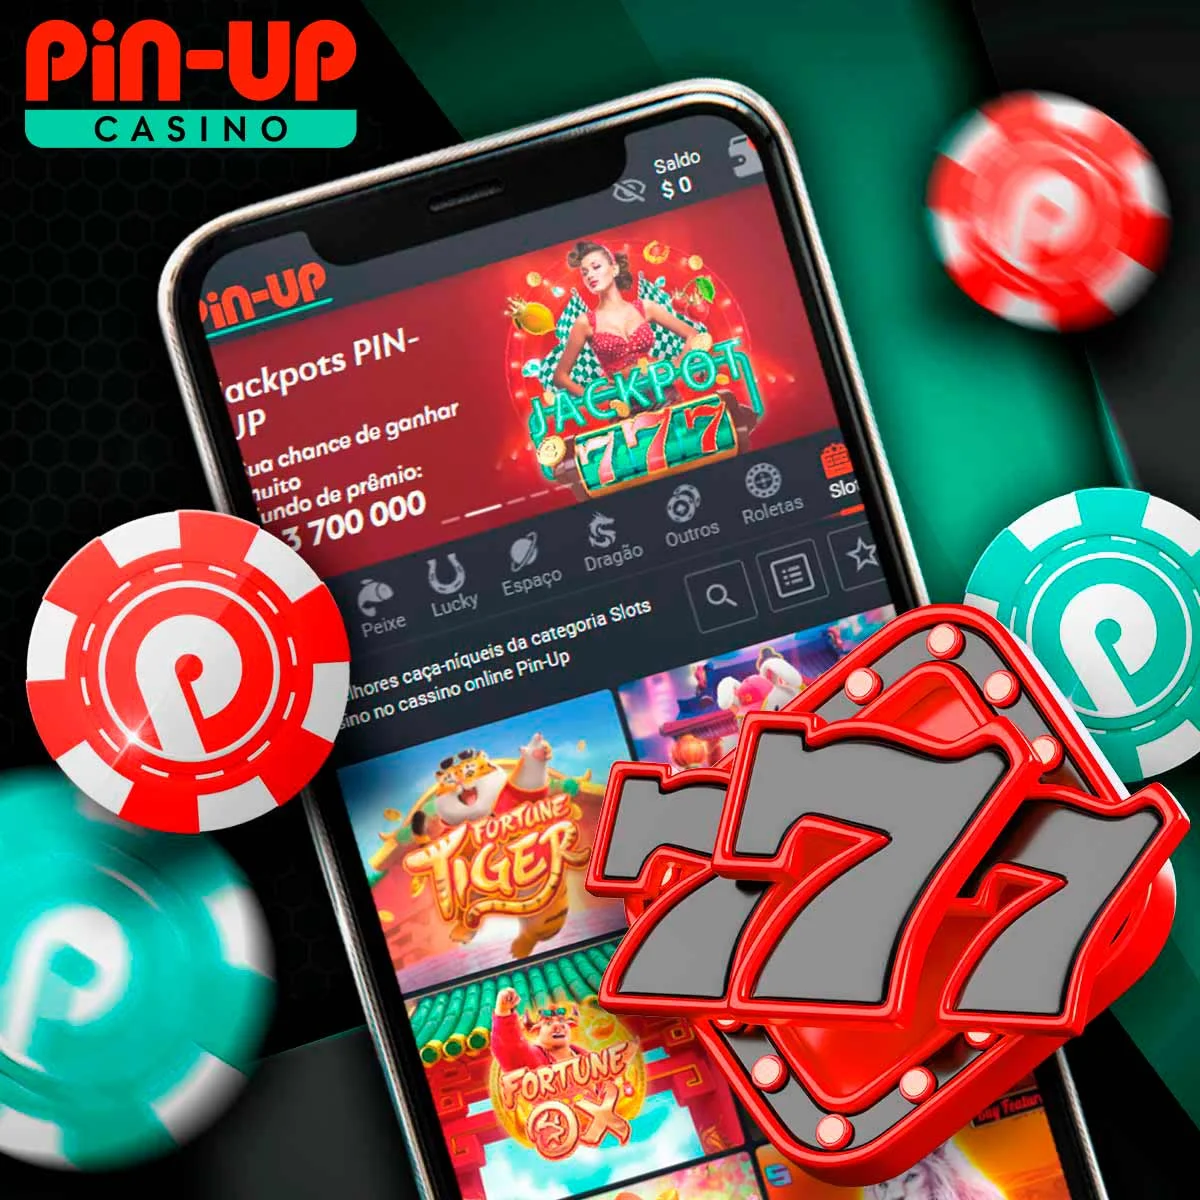 Jogos caça-níqueis da Pin-Up Casino no mercado brasileiro